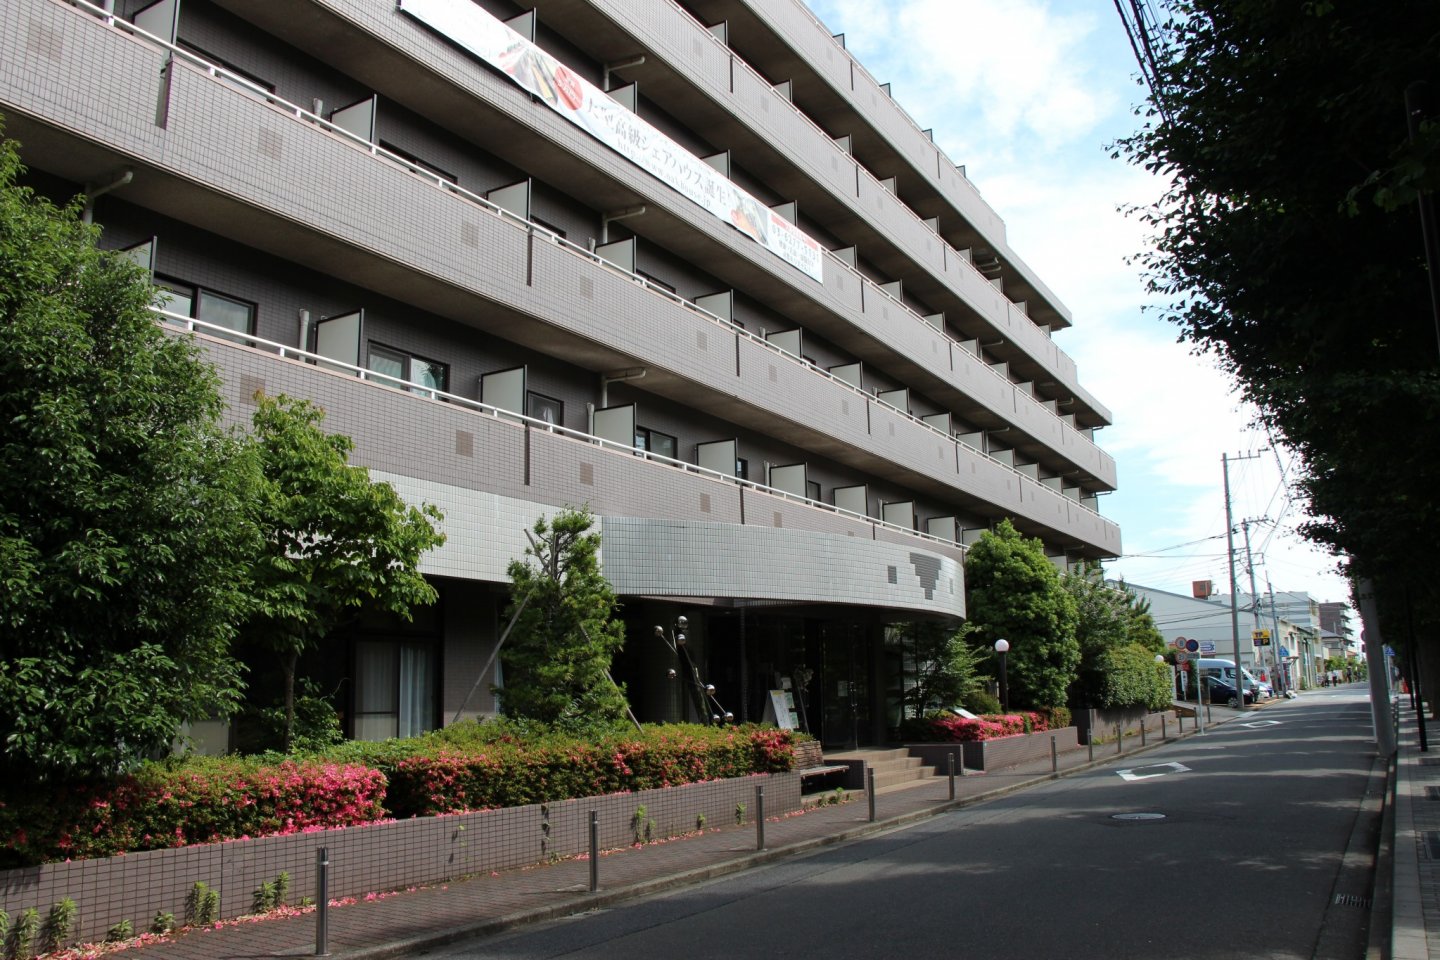 Oakhouse Sagihamara se situe à Fuchinobe, en banlieue ouest de Tokyo, face à une université, et à 7 min à pieds seulement de la gare